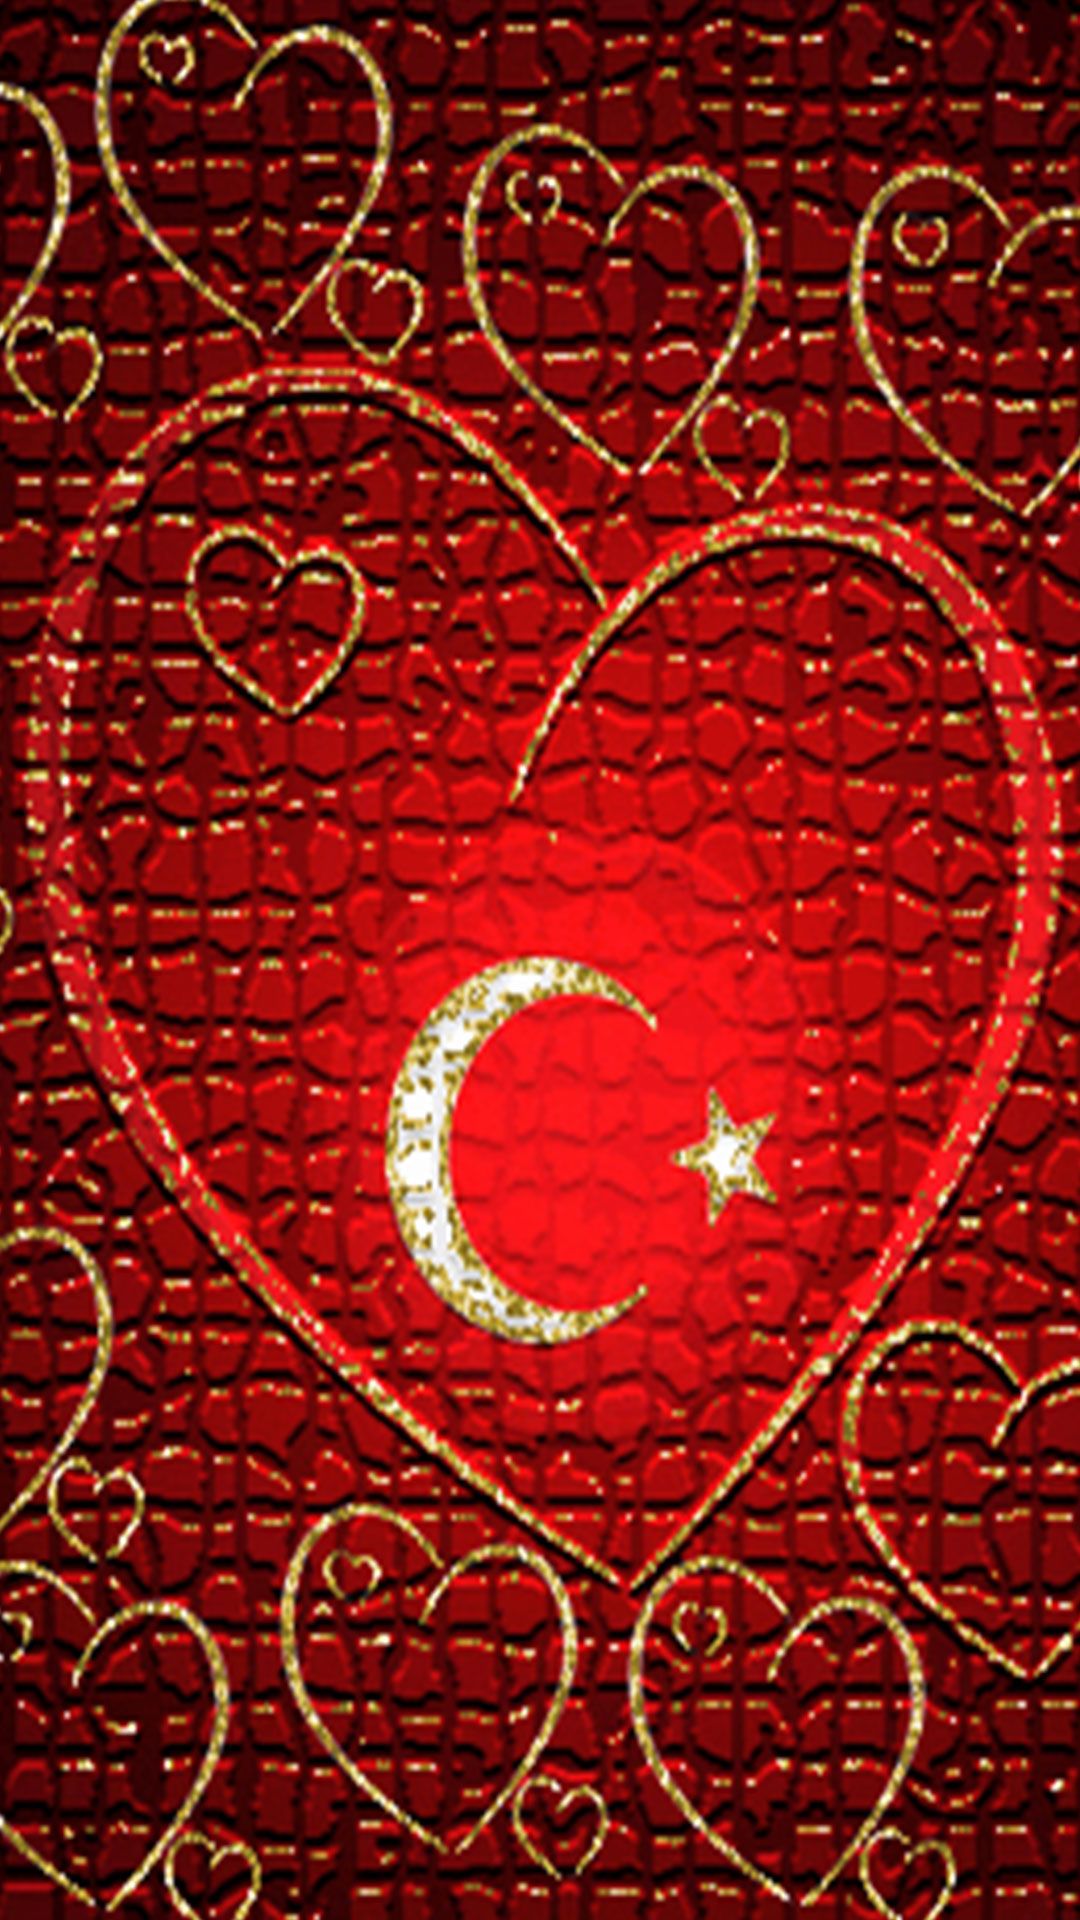 Kalpli turk bayragi 3